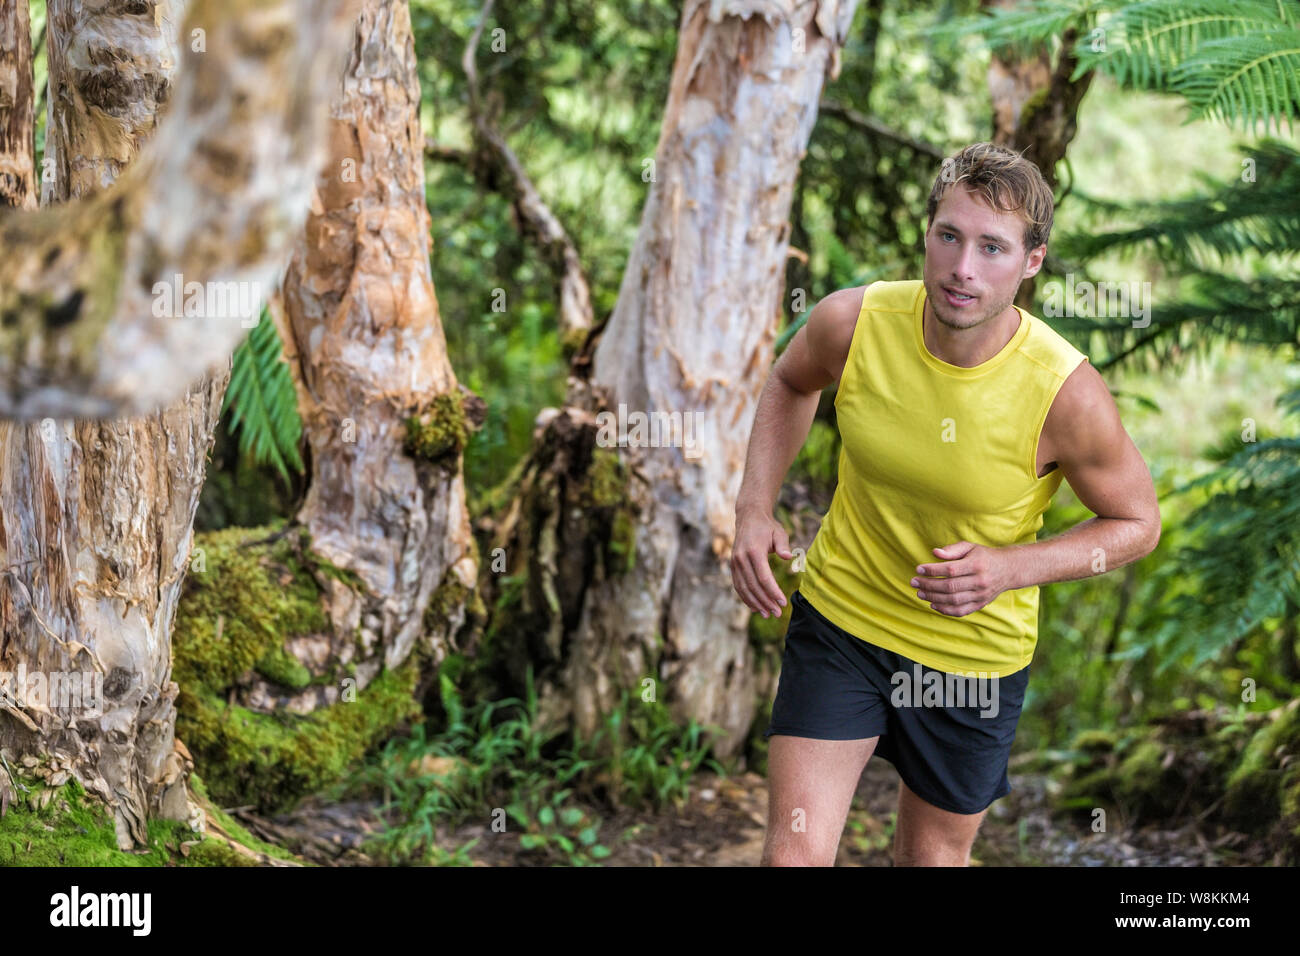 Trail Running man Athlet Runner im Wald Natur Pfad Jogging entlang Bäume im Sommer Landschaft. Männliche Sport Fitness fit Kerl harten Trainings Ausübung Schwitzen ein gesundes und aktives Leben. Stockfoto